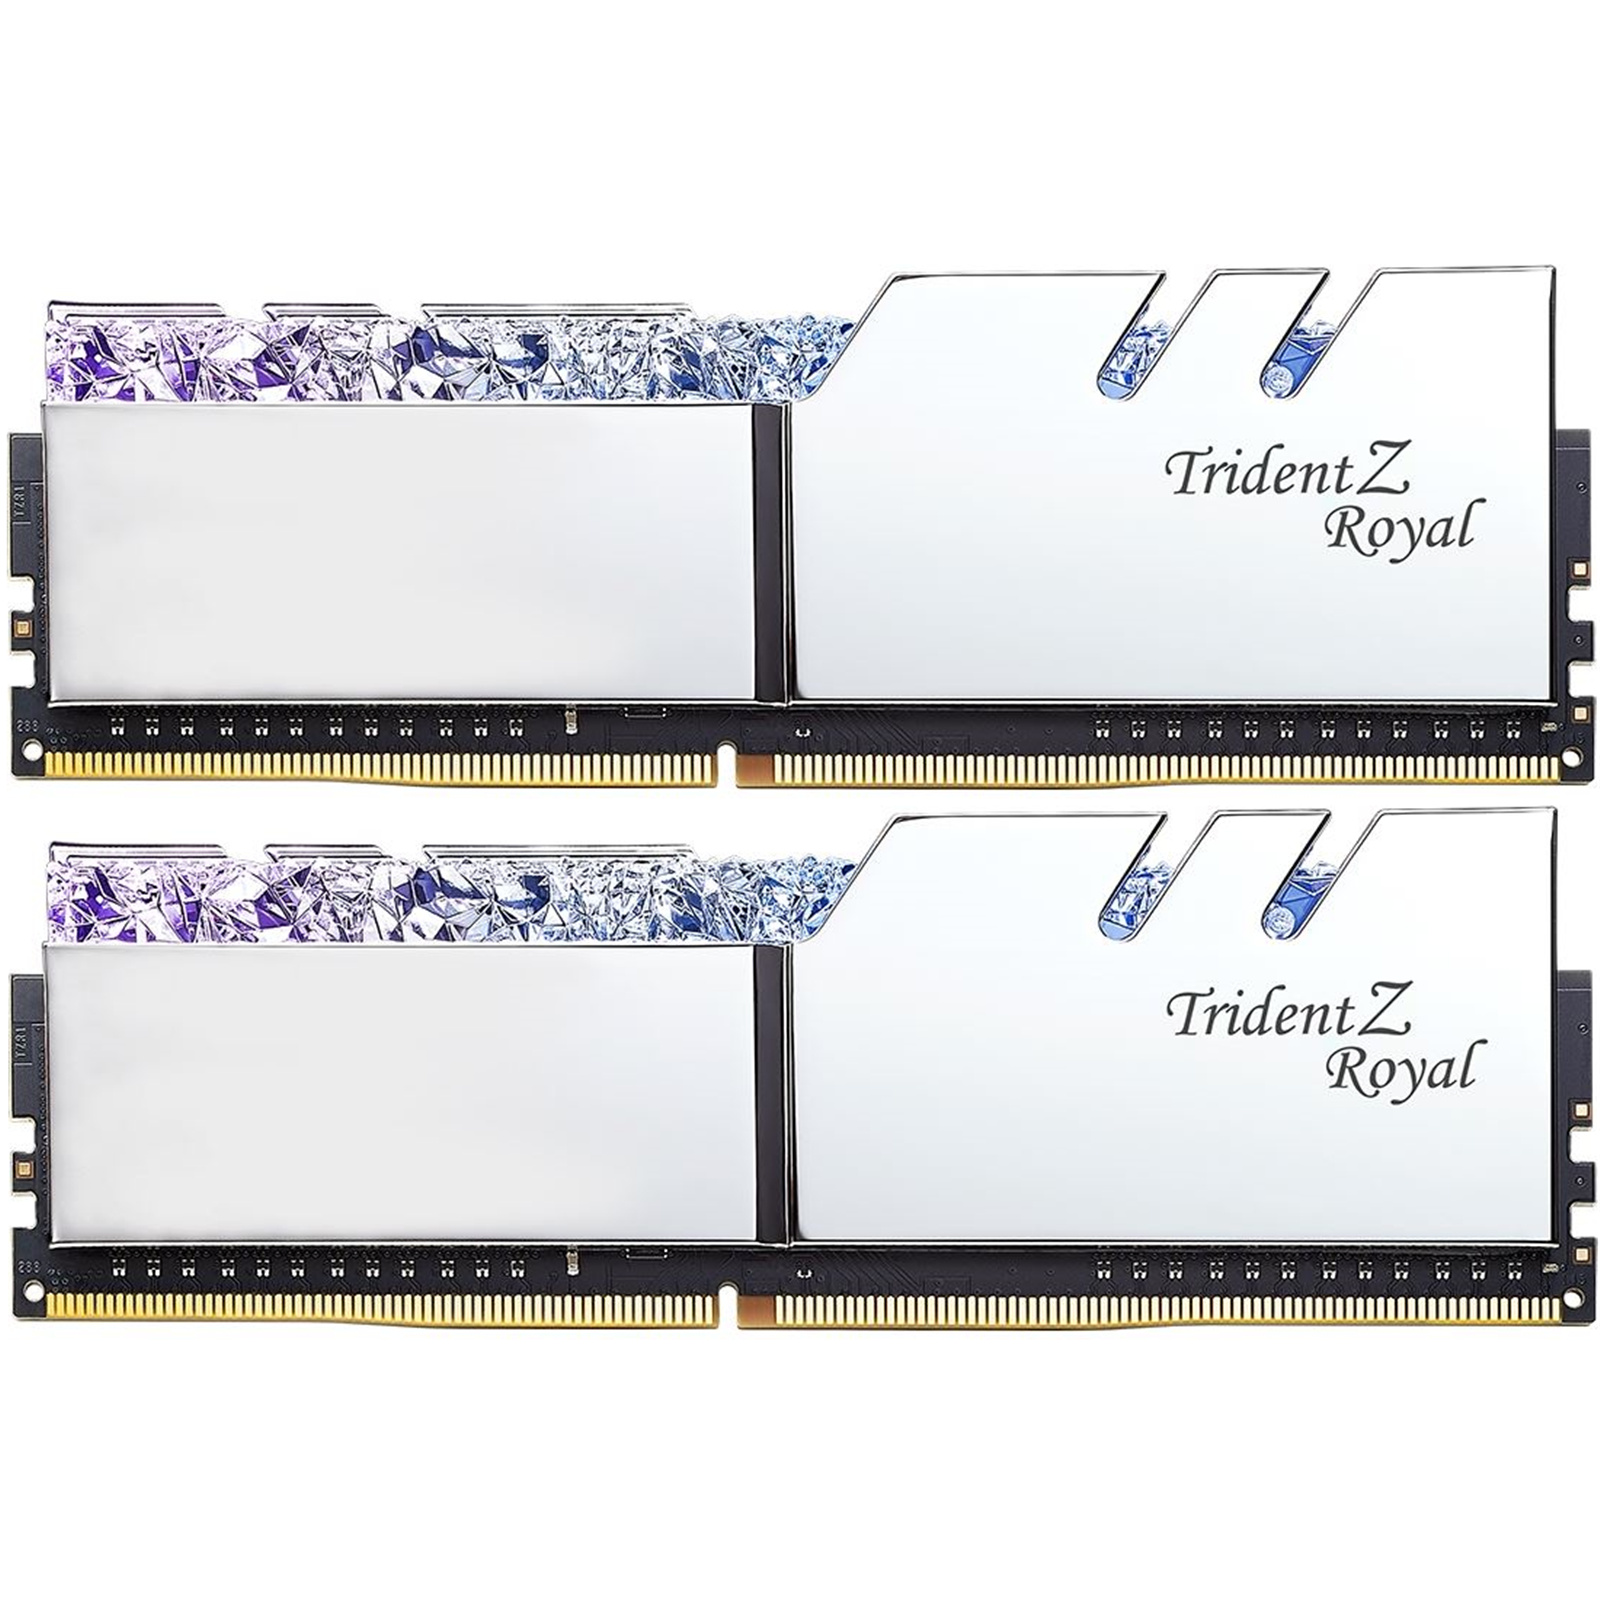 Buy the G.SKILL Trident Z Royal RGB F4-3200C16D-16GTRS 16GB RAM (2 x 8GB)  DDR4... ( F4-3200C16D-16GTRS ) online - PBTech.com